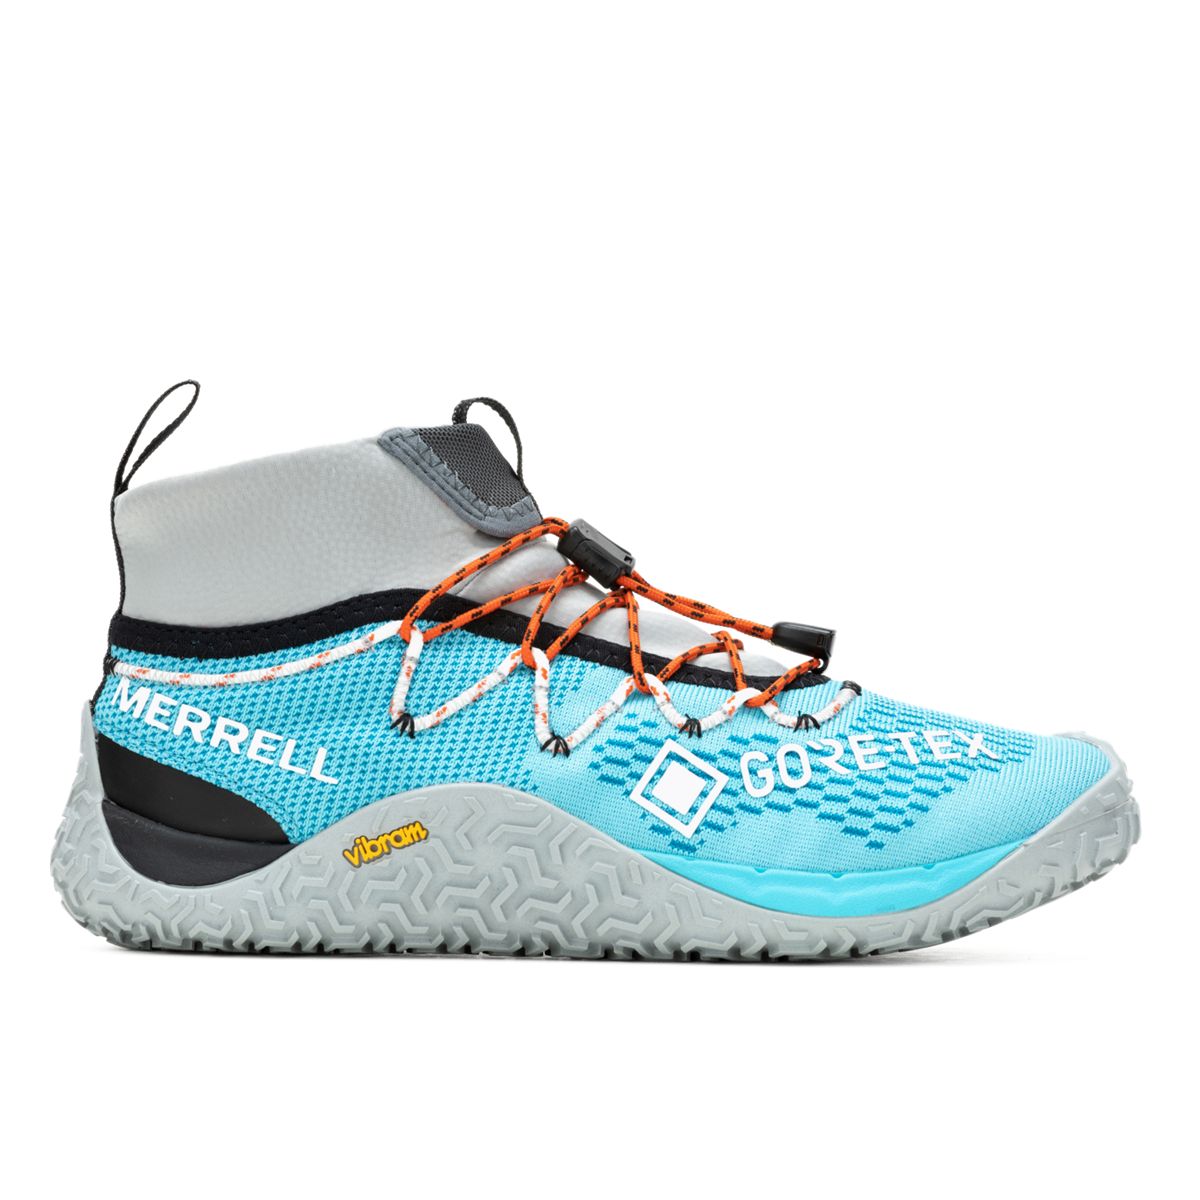 Merrell Trail Glove 7 Gore-Tex en promoción